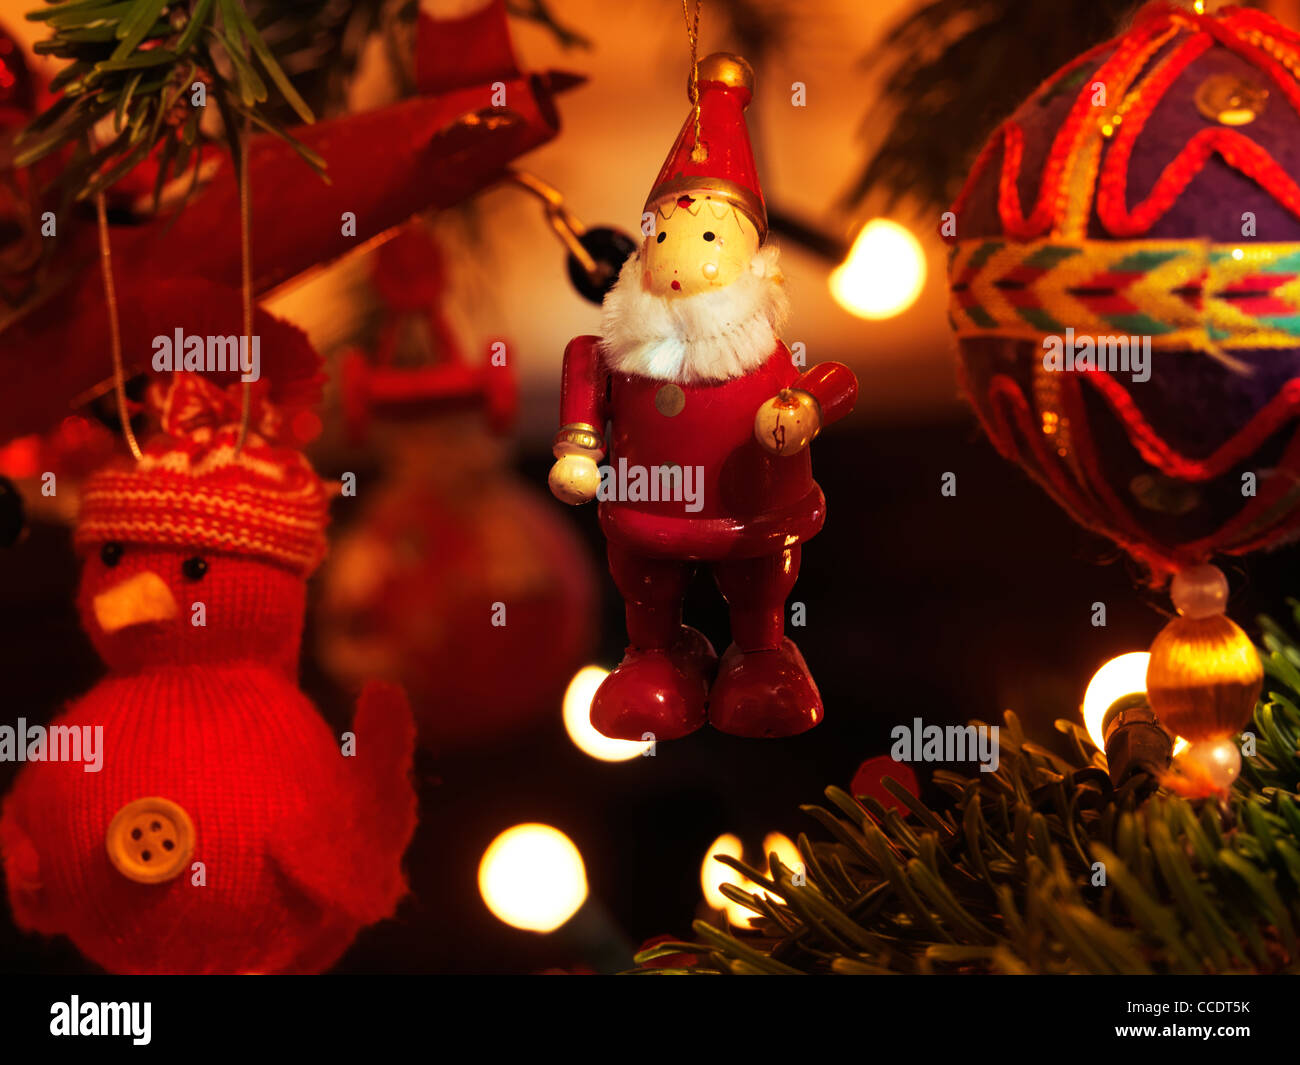 Weihnachtsschmuck Ball an einen Weihnachtsbaum hängen eine wollene Ente, hölzernen Weihnachtsmann und A Ball Stockfoto